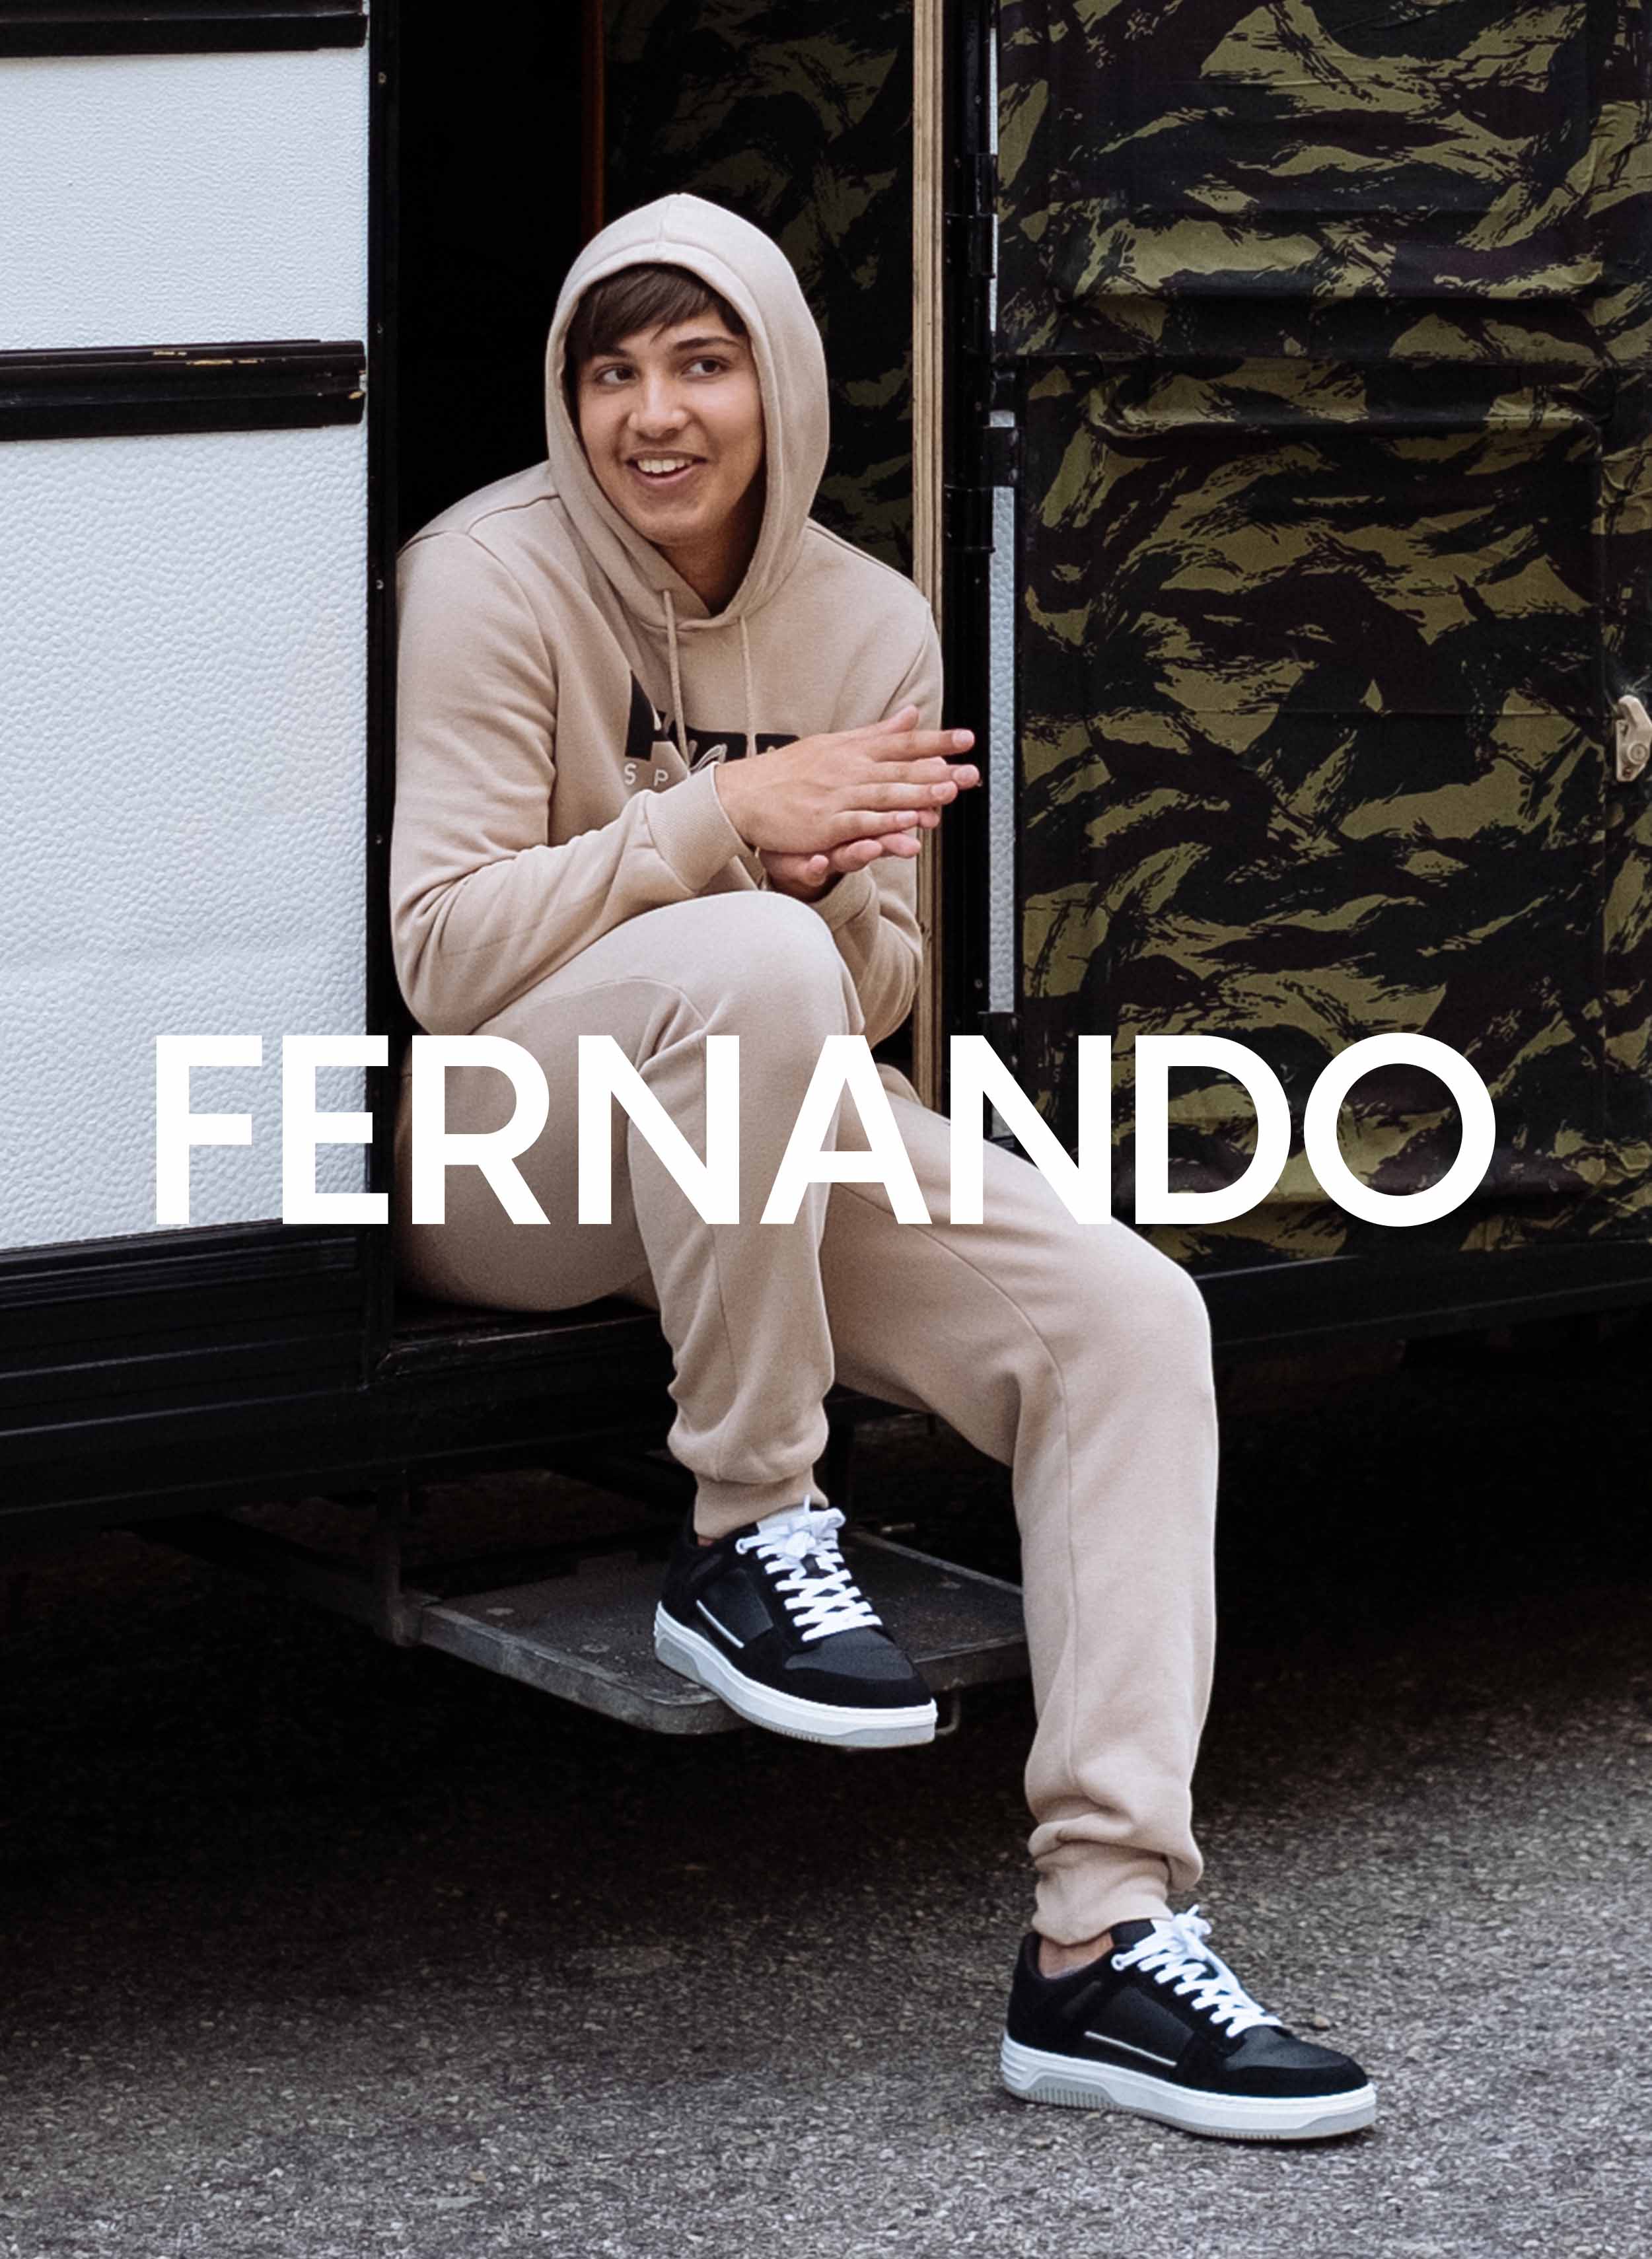 Fernando sitzt in einem Wohnmobil und trägt Diverge sneakers, Förderung sozialer Auswirkungen und maßgefertigter Schuhe im Rahmen des IMAGINE-Projekts.